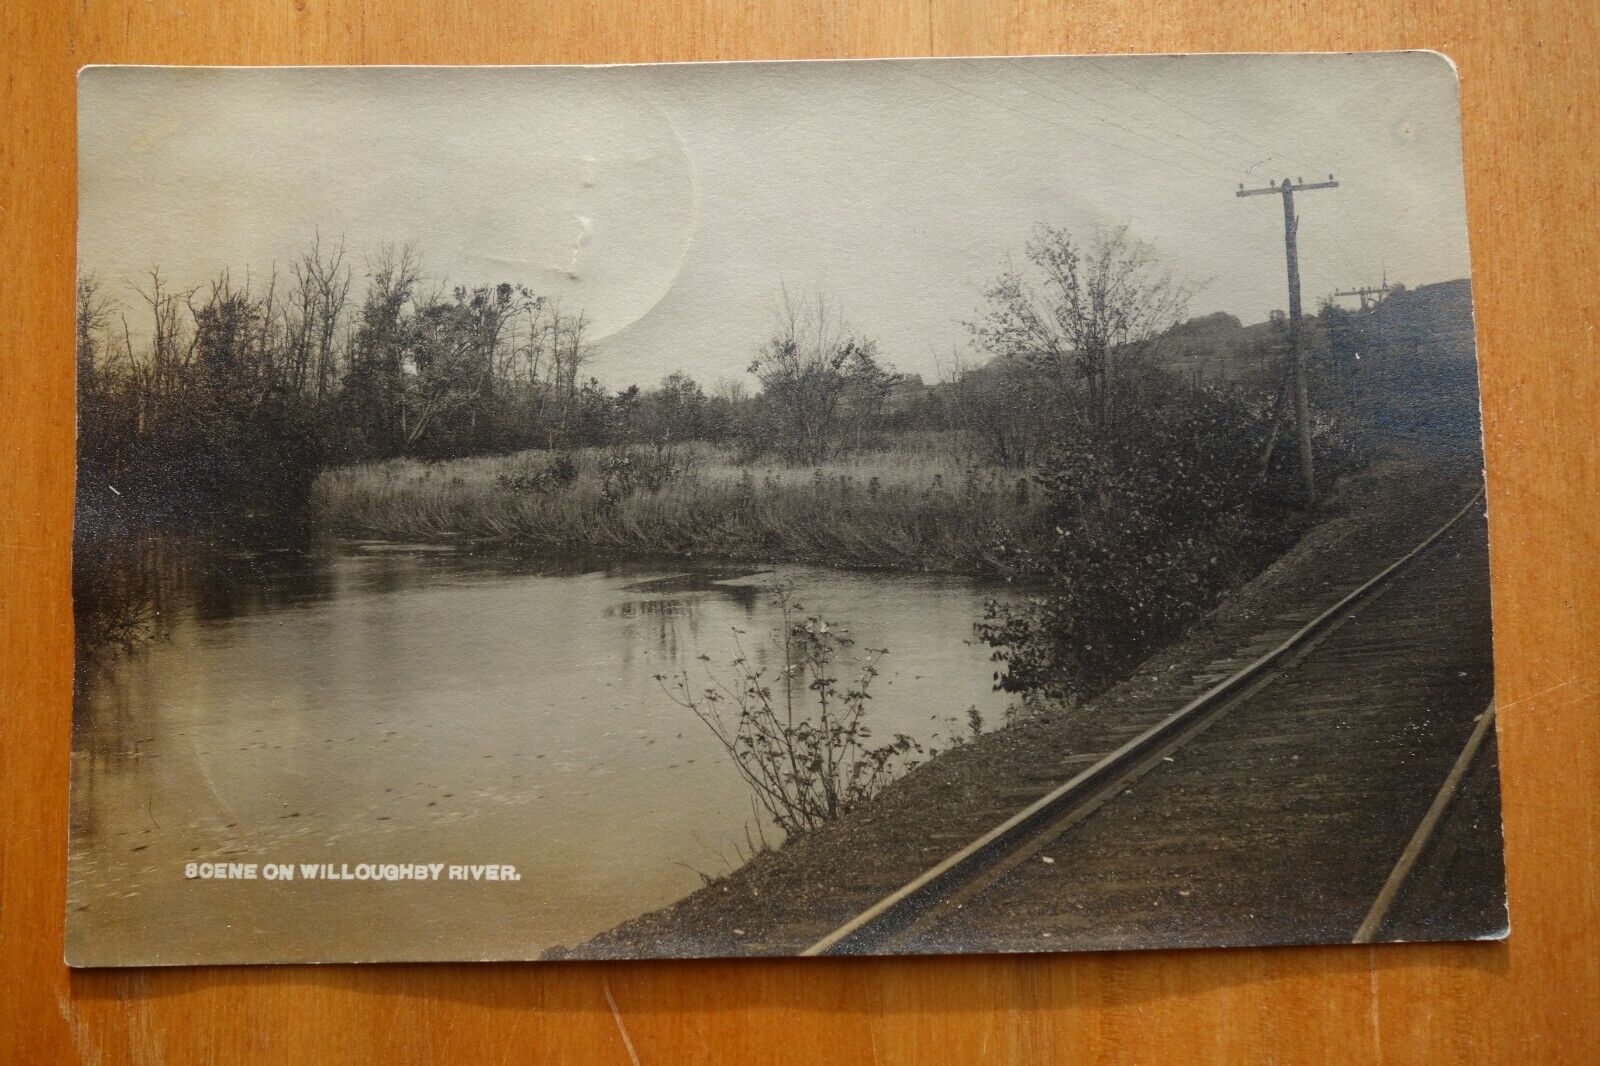 railroad scene on Willoughby River, Barton, VT real photo postcard pmk 1912